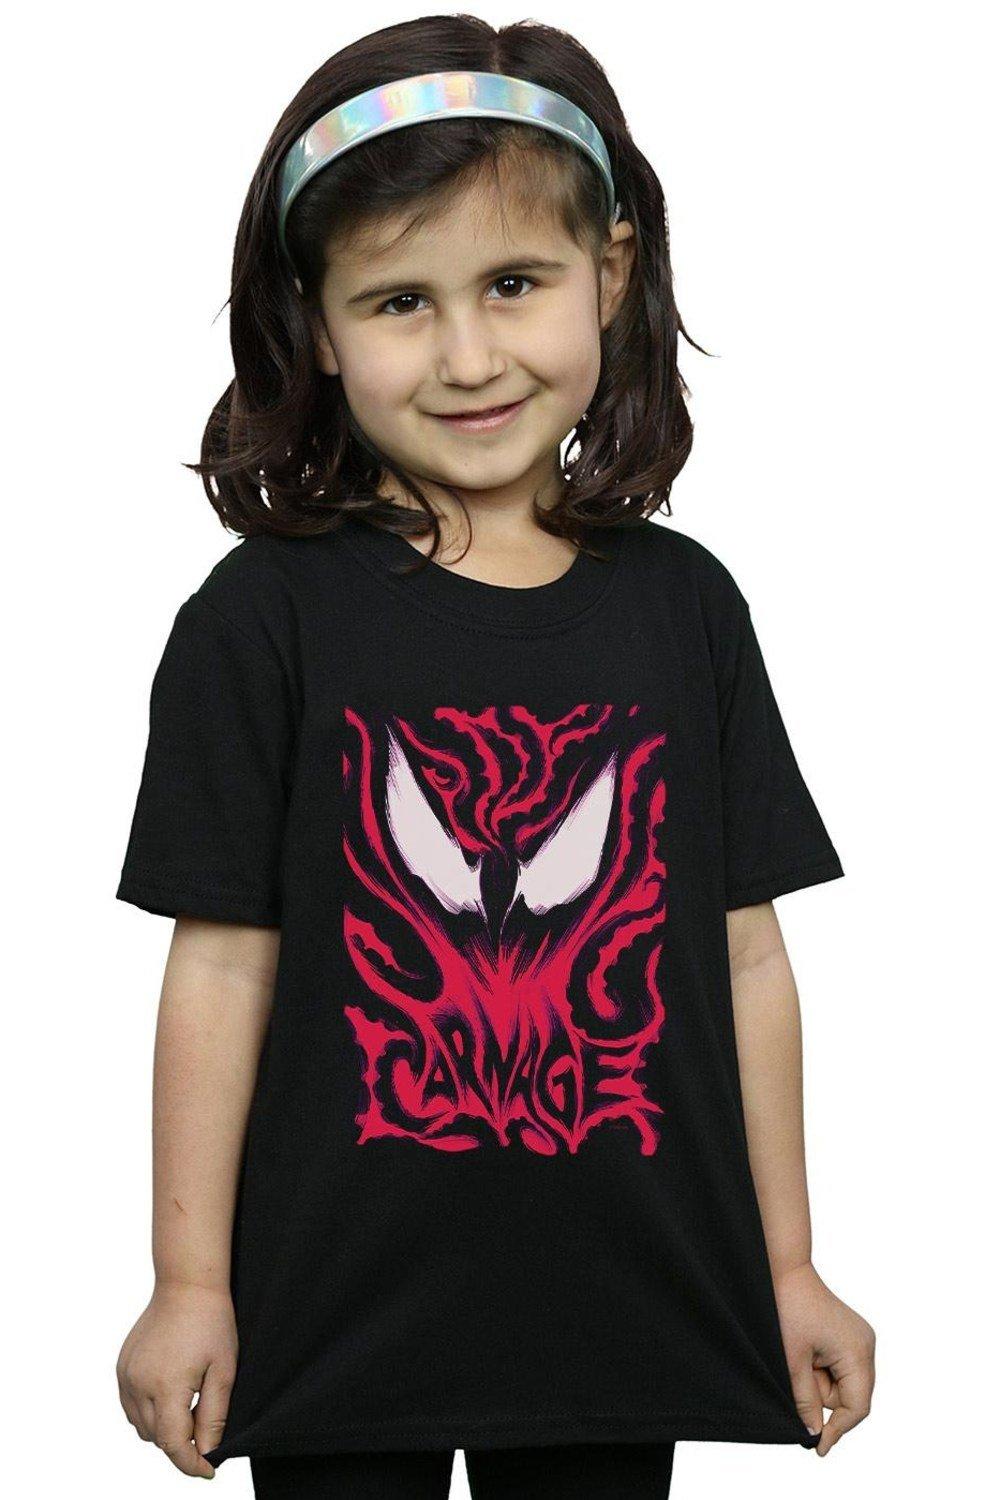 Хлопковая футболка Venom Carnage Marvel, черный